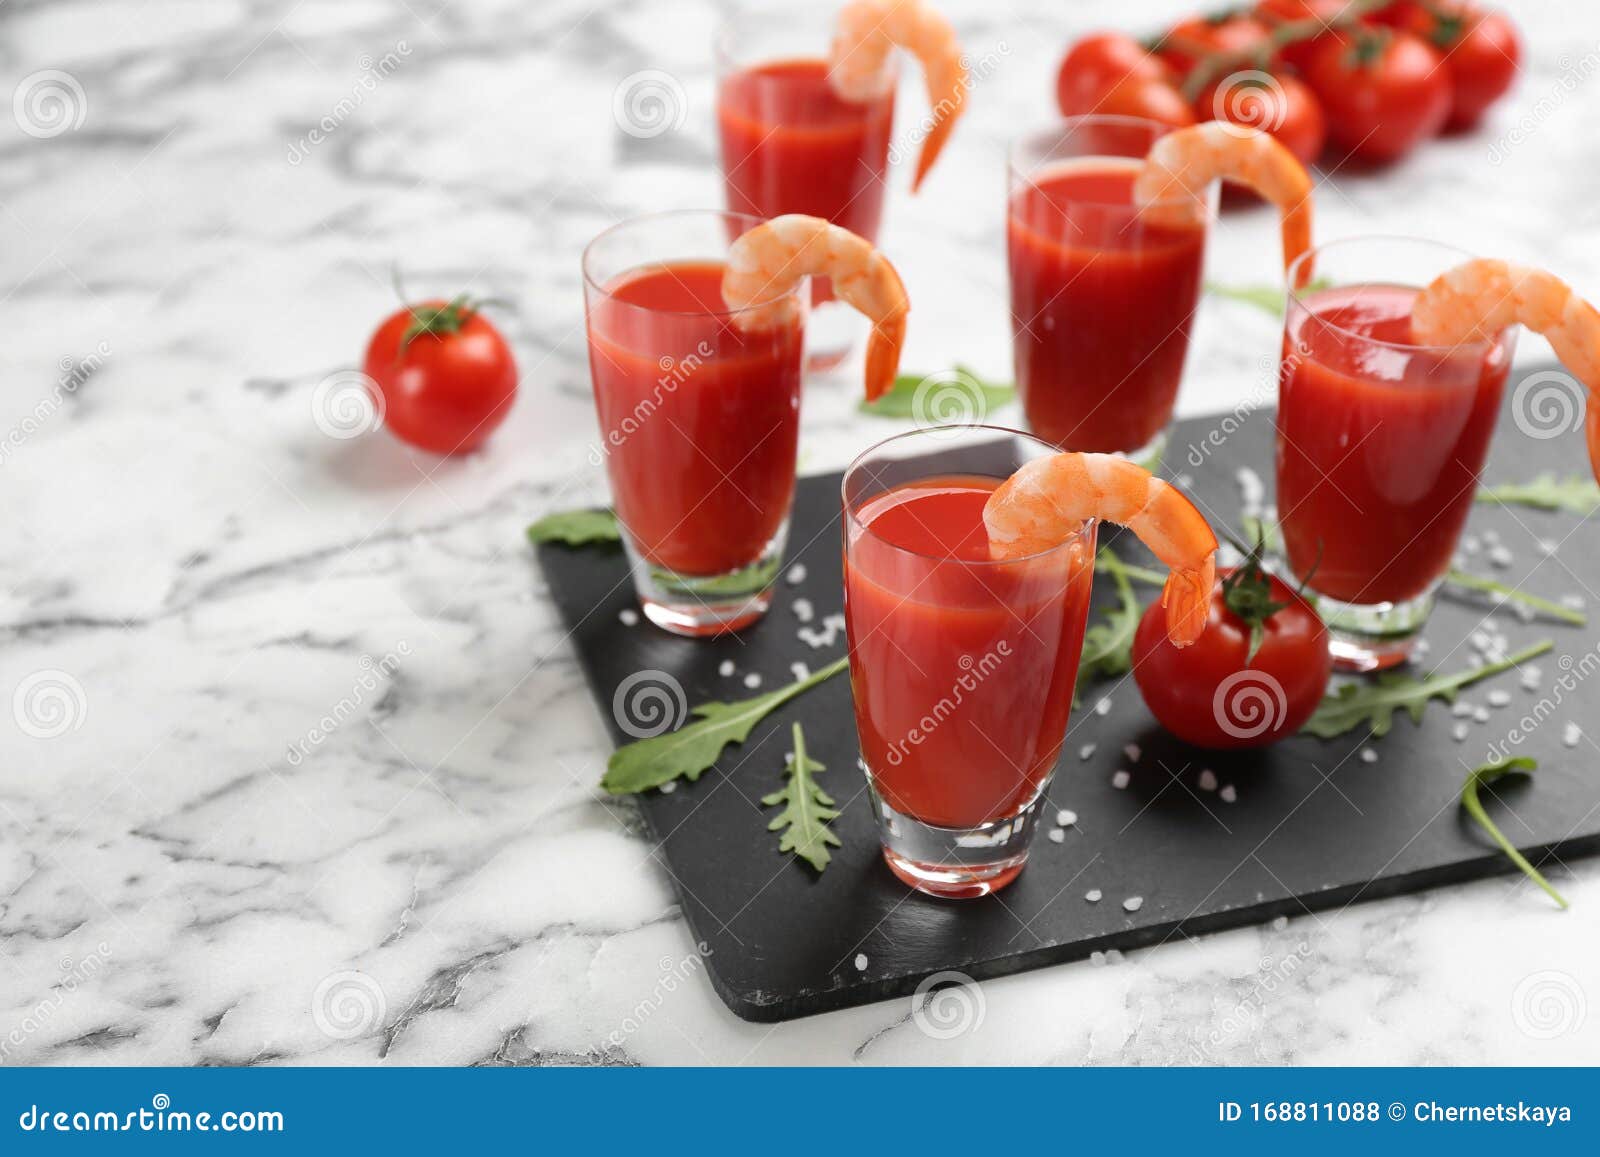 Garnelencocktail Mit Tomatensauce Auf Dem Tisch Serviert Stockfoto ...